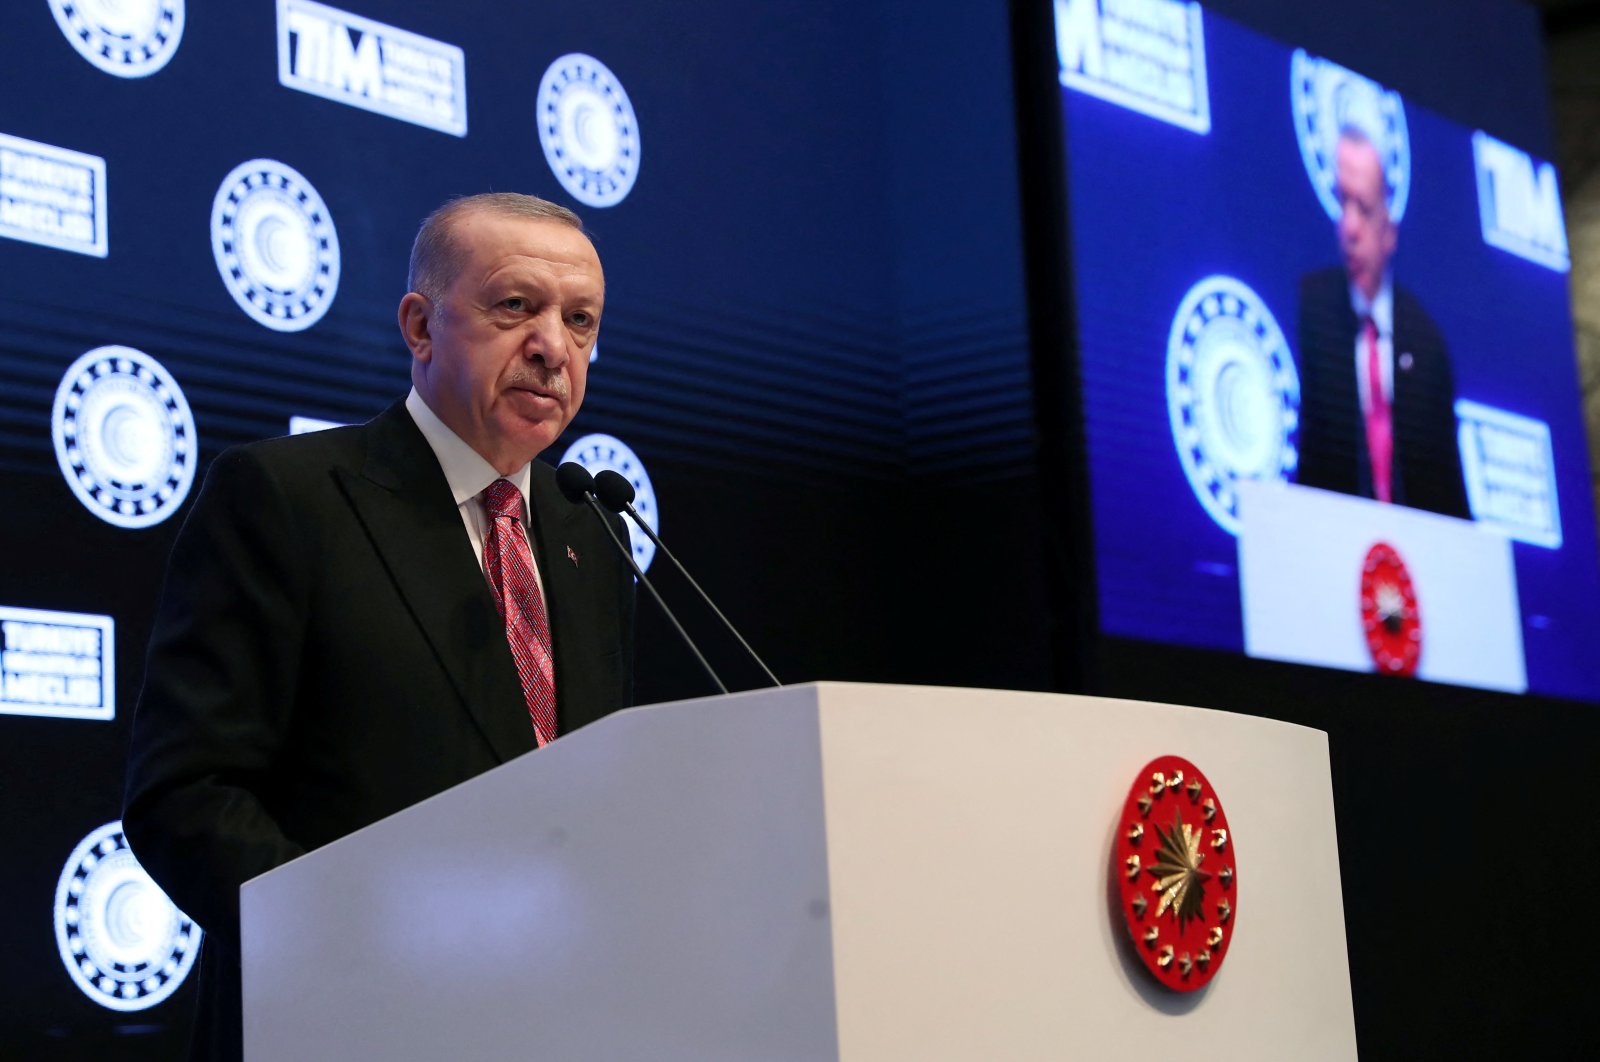 Bagian terburuk dalam ekonomi ‘tertinggal’, kata Erdogan